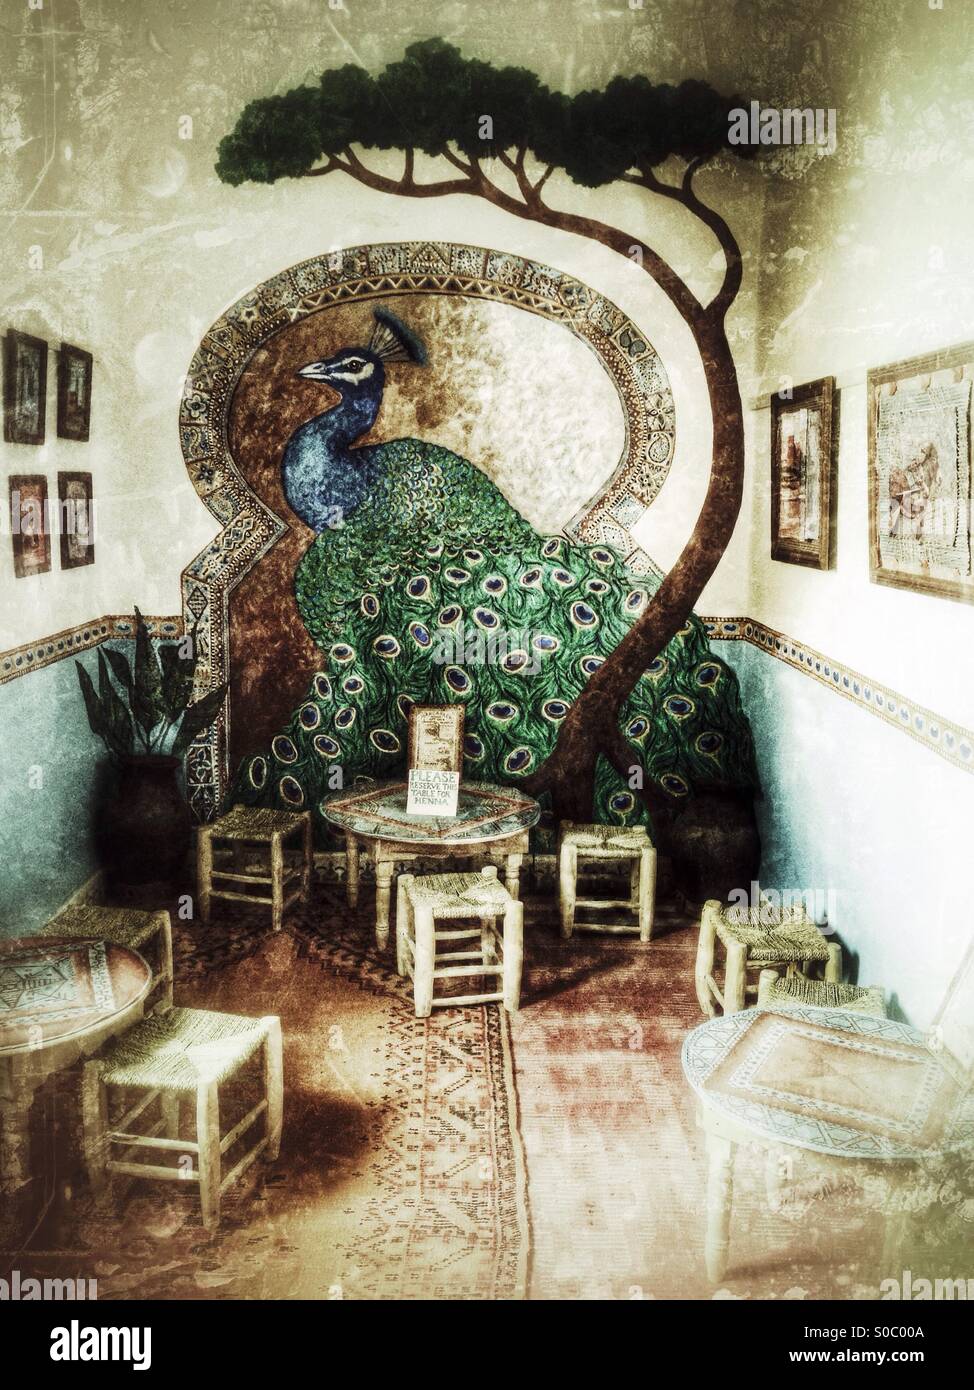 Peinture murale d'un paon à Henna Cafe. Marrakech, Maroc. Banque D'Images